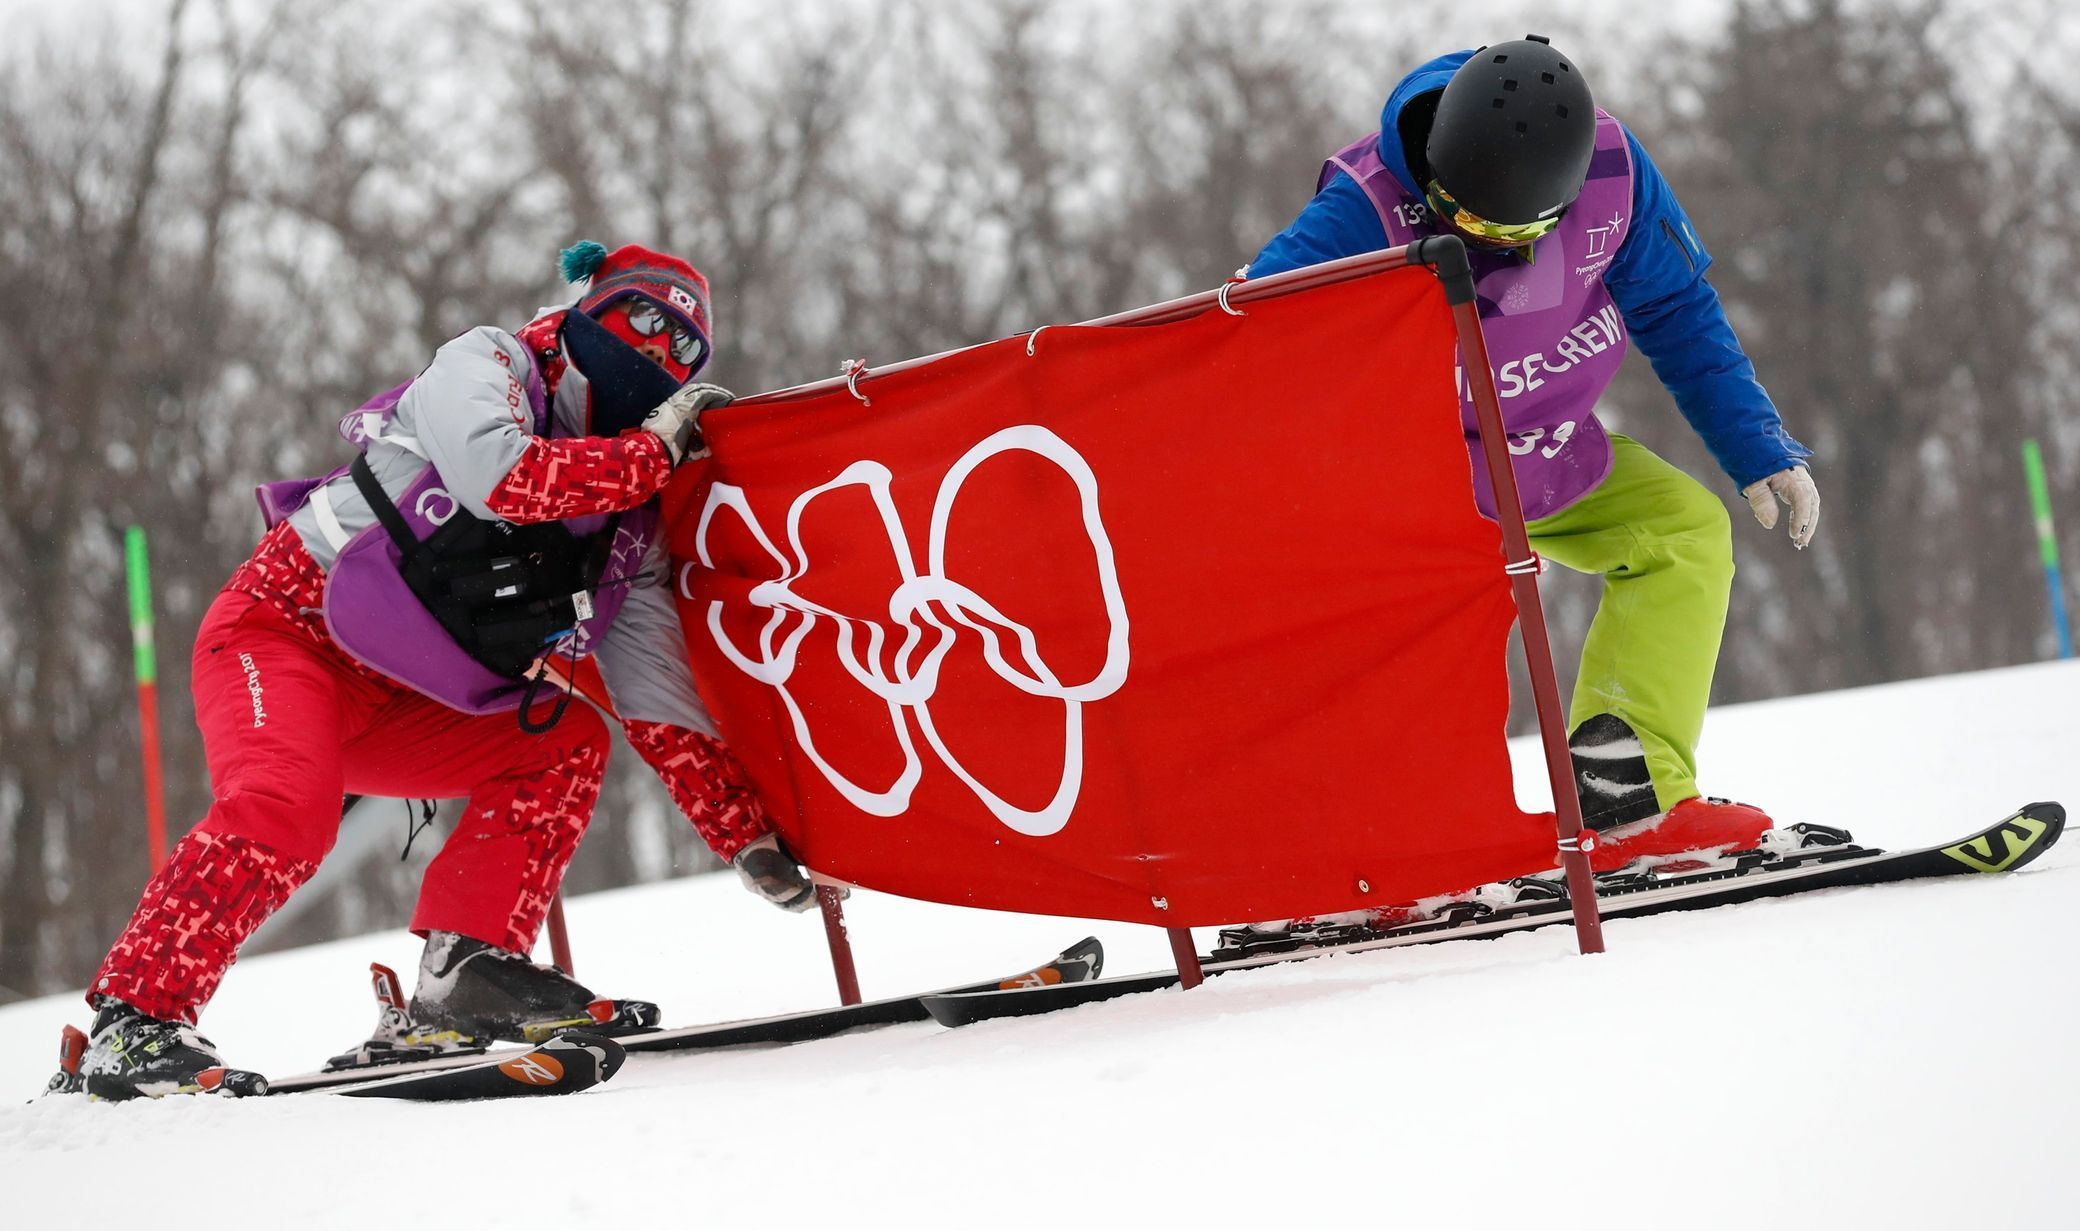 Olympiáda v Pchjongčchangu 2018: Vítr odložil i slalom původně plánovaný na středu